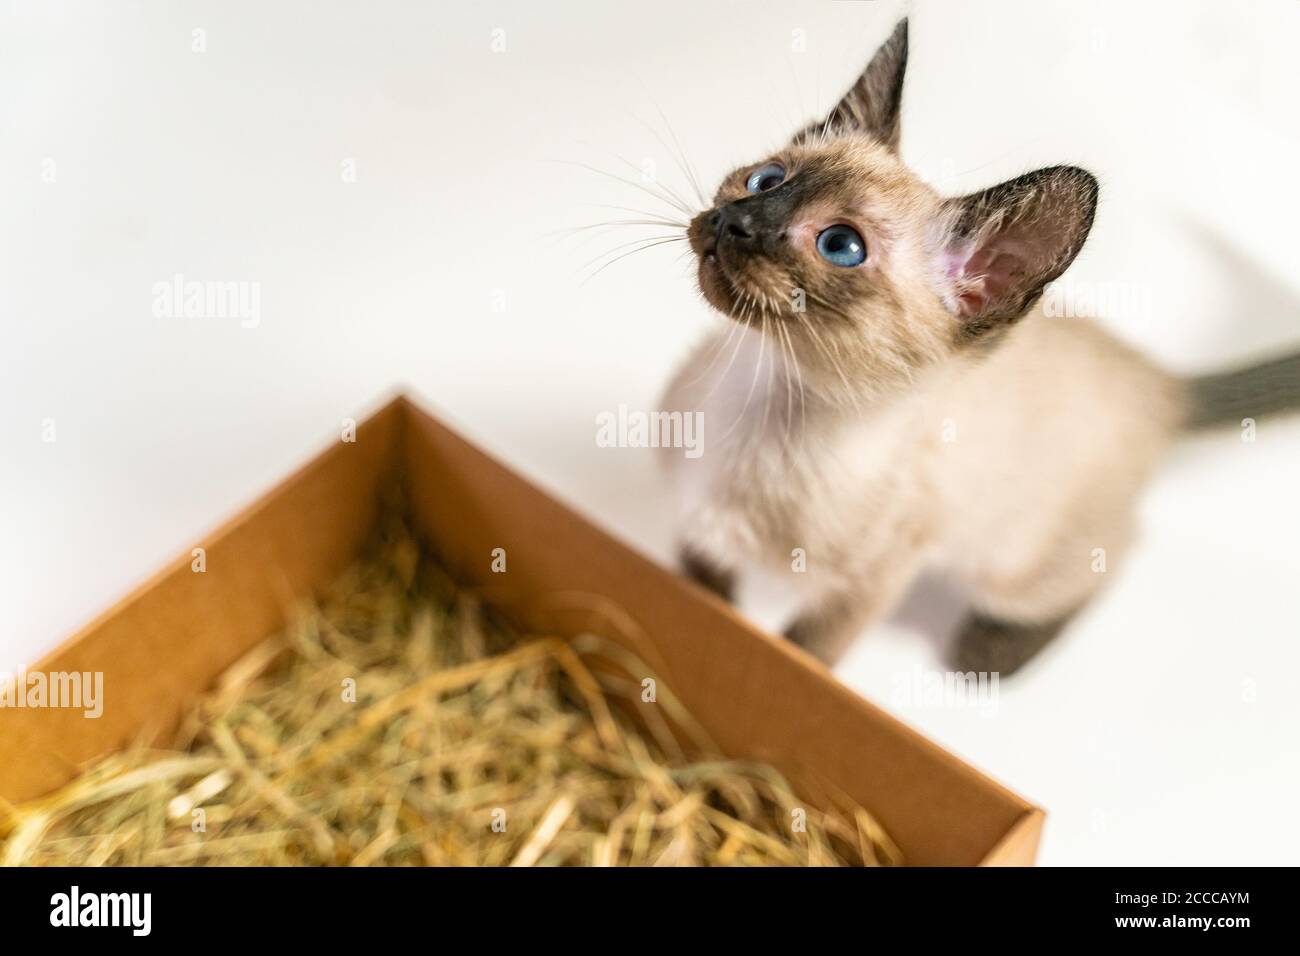 Reinrassige 2 Monate alte Siamkatze mit blauen mandelförmigen Augen auf Box Korb Hintergrund. Thai Kätzchen versteckt in einem Box Korb. Konzepte von Haustieren spielen hidi Stockfoto